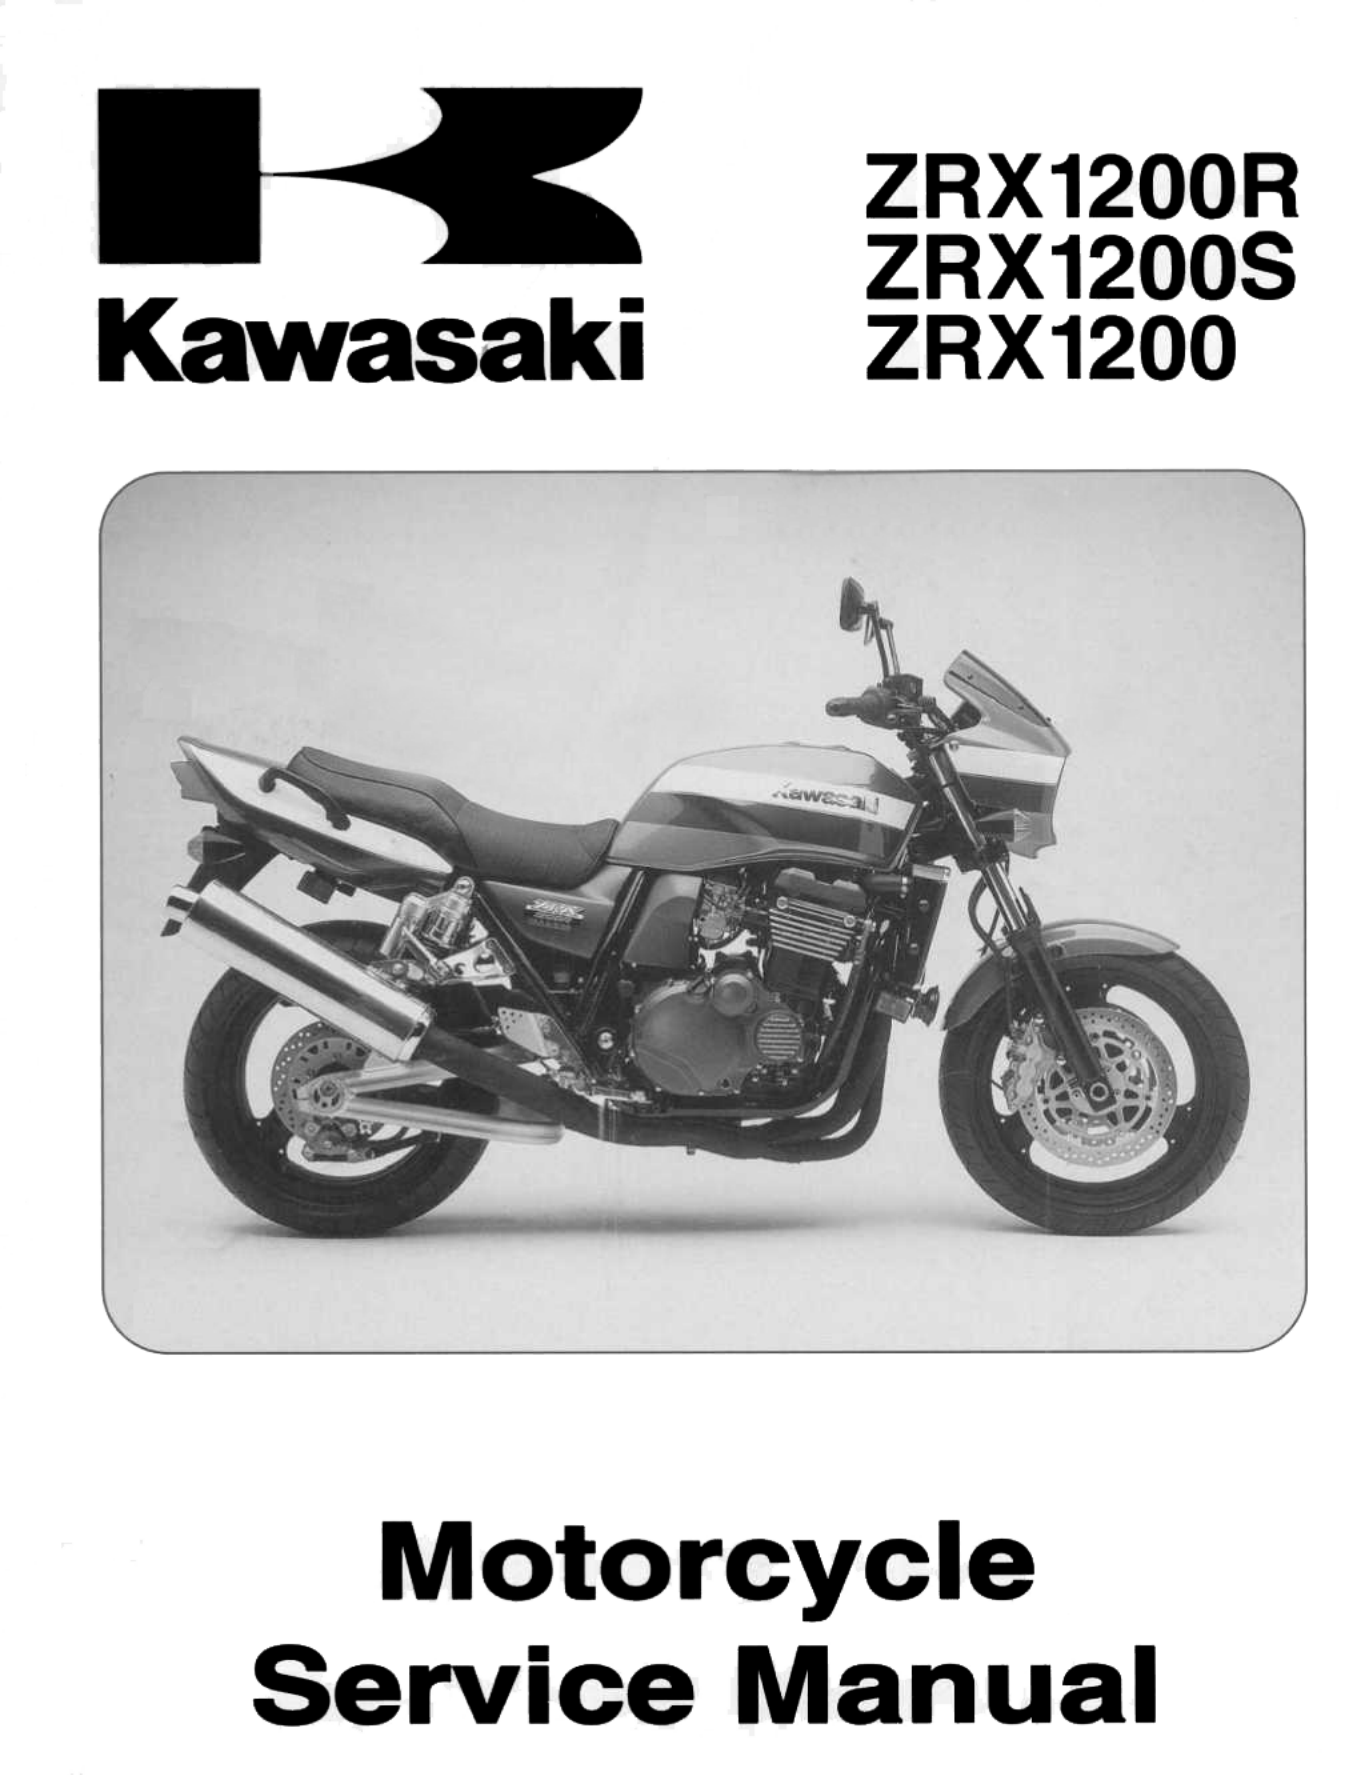 原版英文2001-2007年川崎zrx1200s zrx1200r Kawasaki ZRX1200R ZRX1200S维修手册插图4